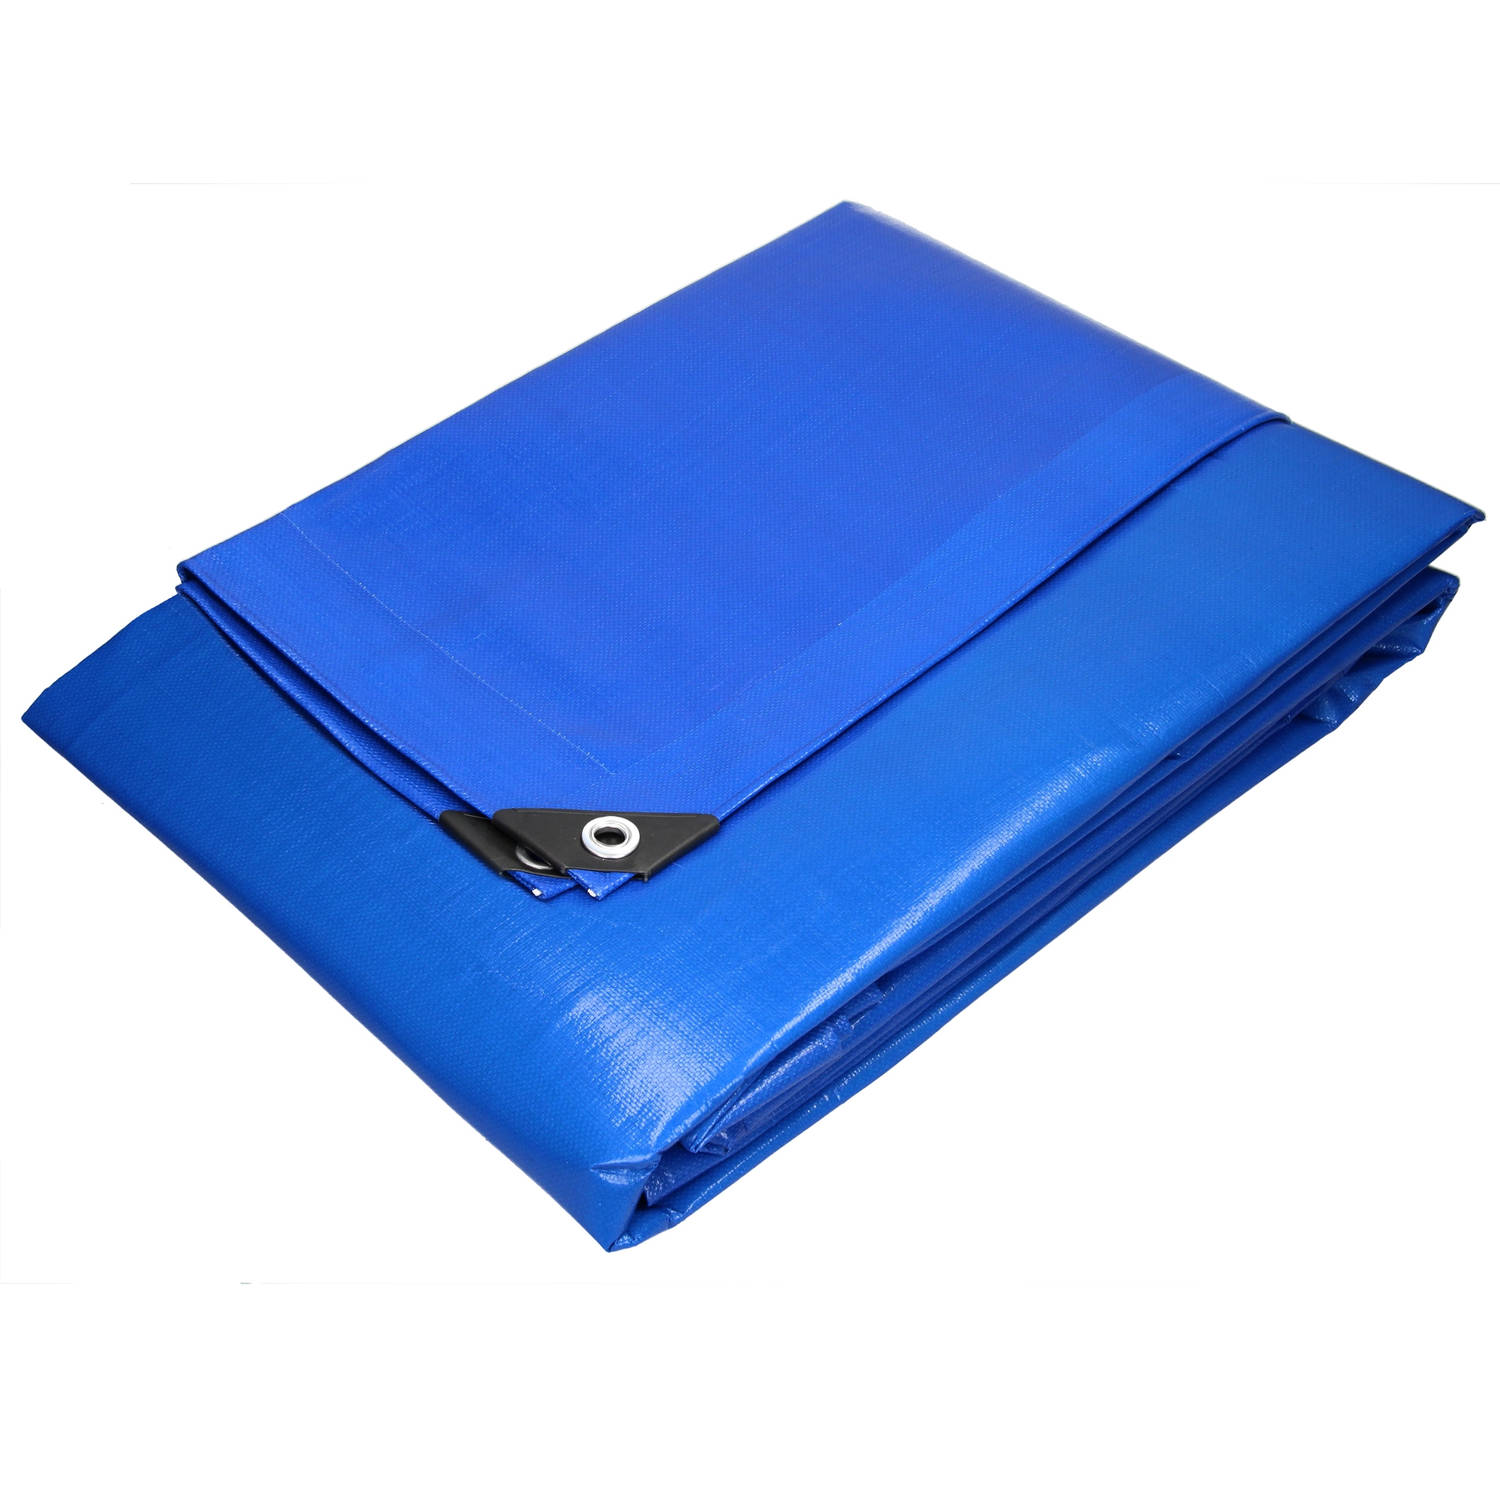 Zeildoek met oogjes, 1,5x12 m 260g/m², blauw, gemaakt van polyethyleenweefsel met polyethyleen coating aan beide zijden